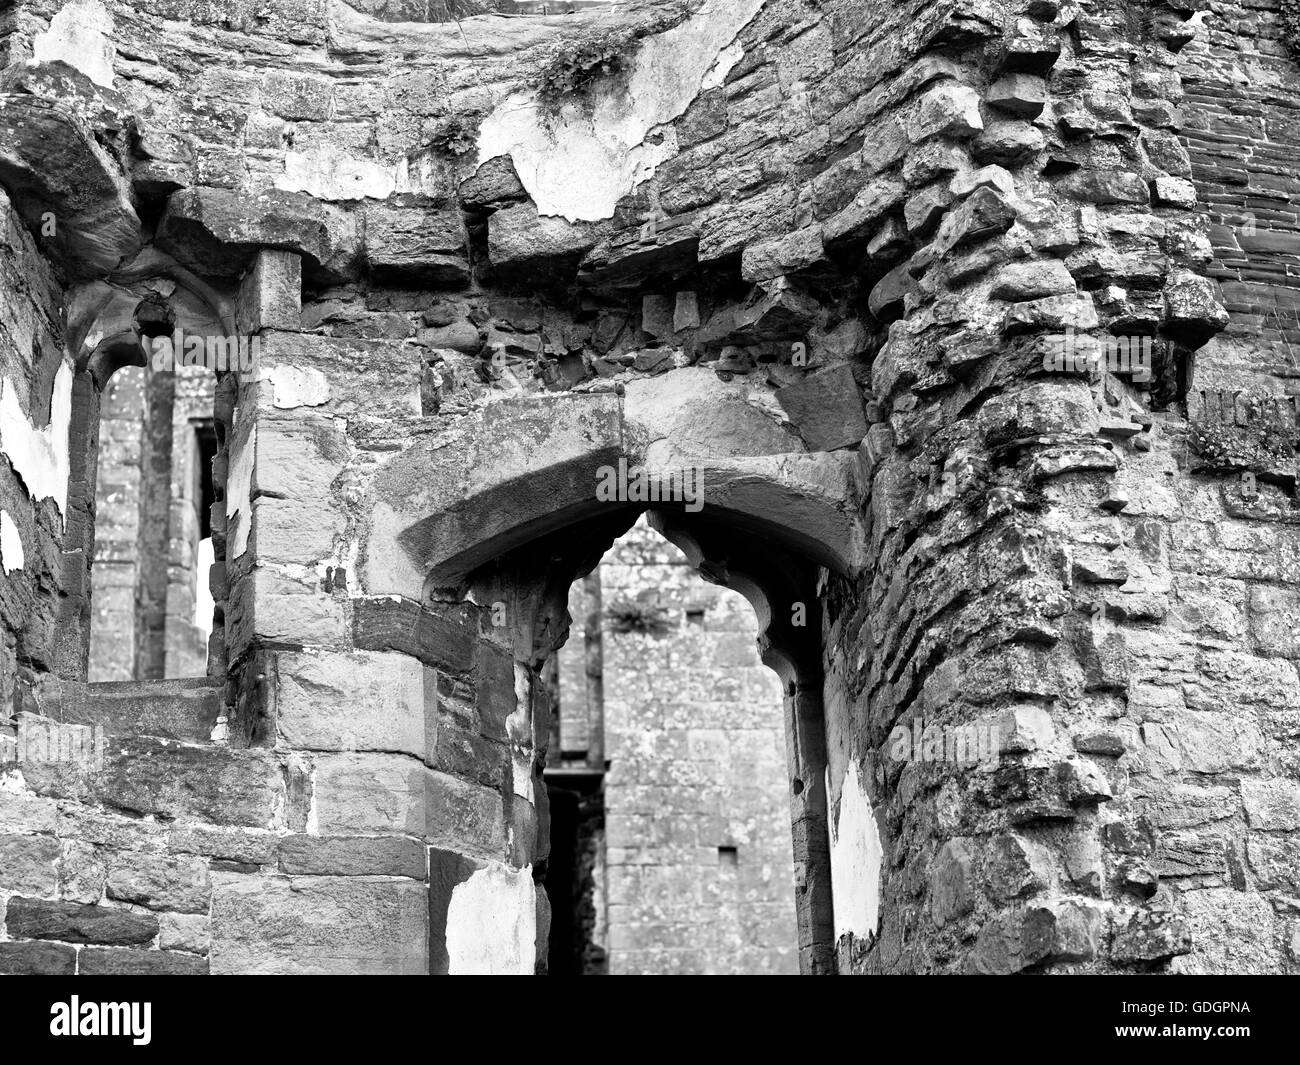 Las ruinas del castillo de Raglan mostrando hermosos trabajos en piedra que ha sido restaurada con muy buen gusto Foto de stock